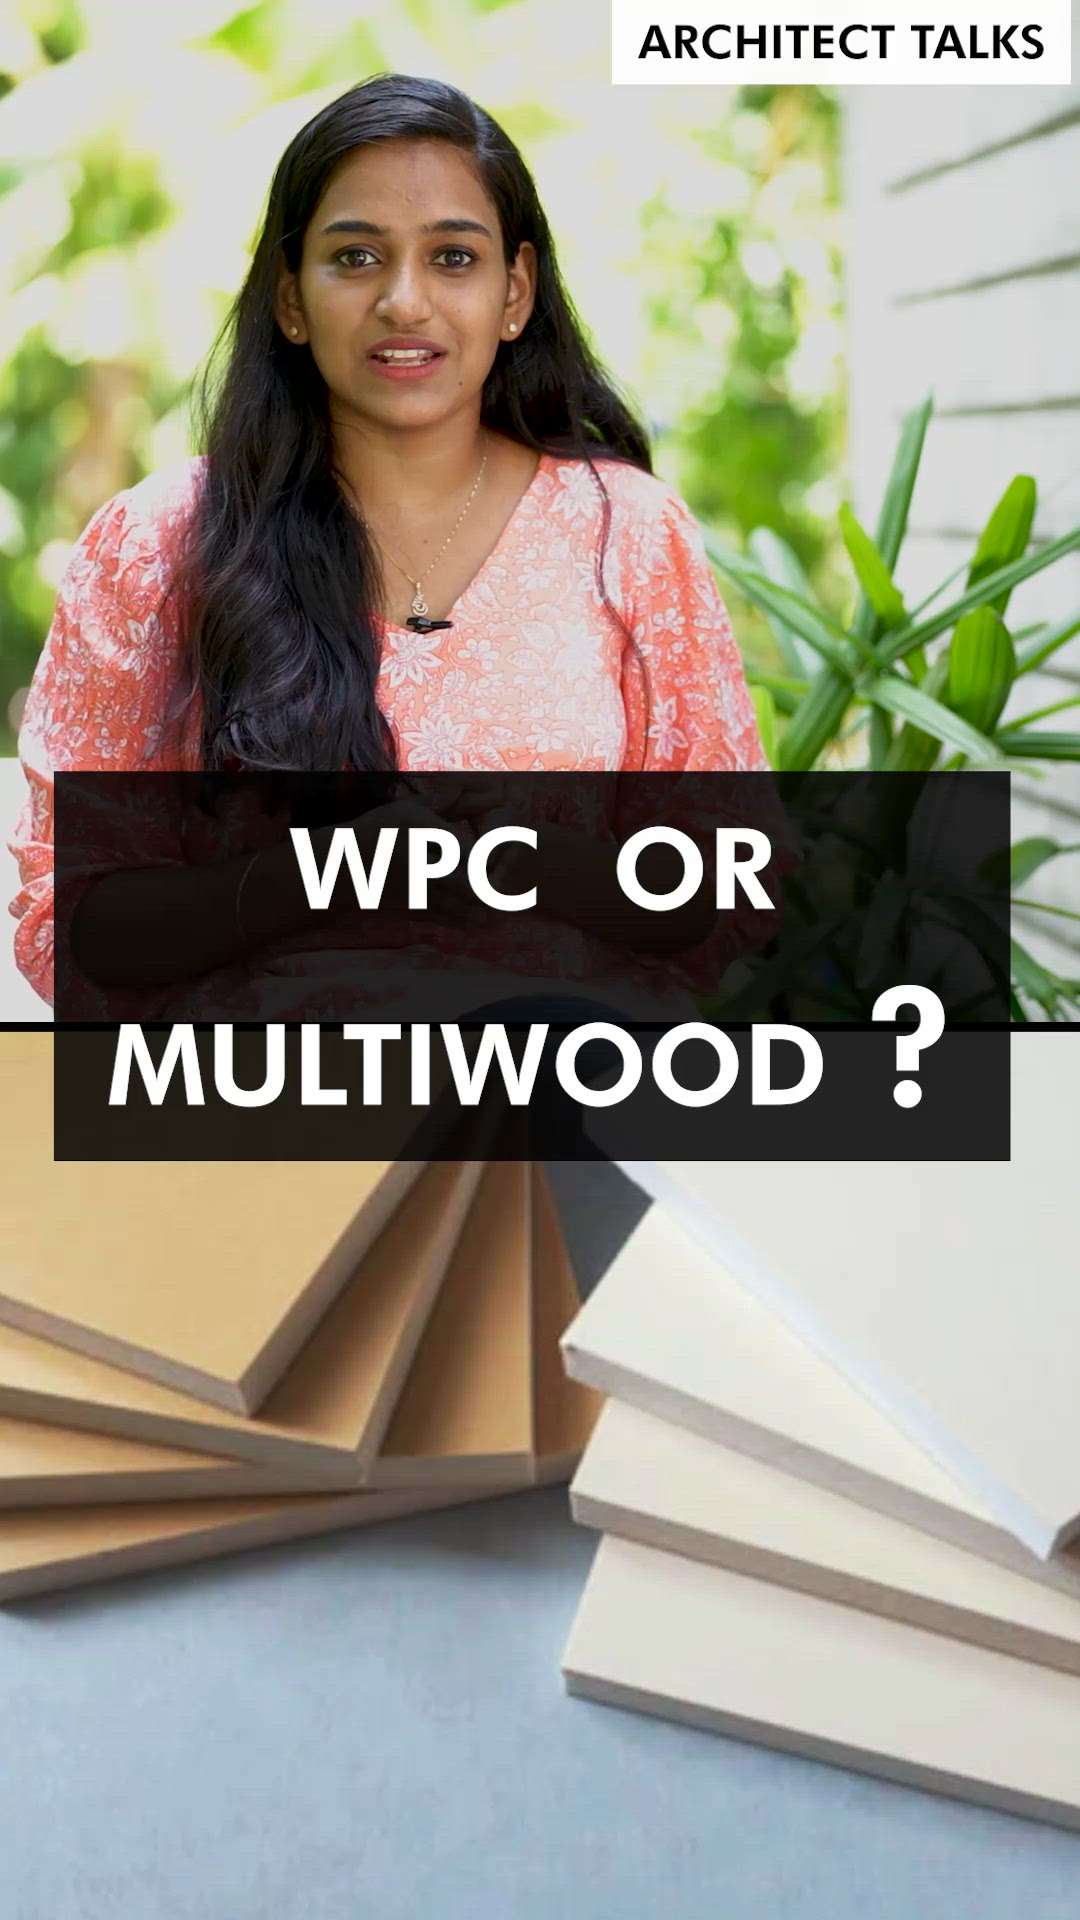 ഏതാണ് shelf നിർമിക്കാൻ മികച്ചത്??
Wpc v/s  Multiwood
 #creatorsofkolo  #alternatives  #wood  #wpc  #multiwood  #arjanissony  #janissony  #axyzarchitects  #axyzbuilders  #KitchenCabinet